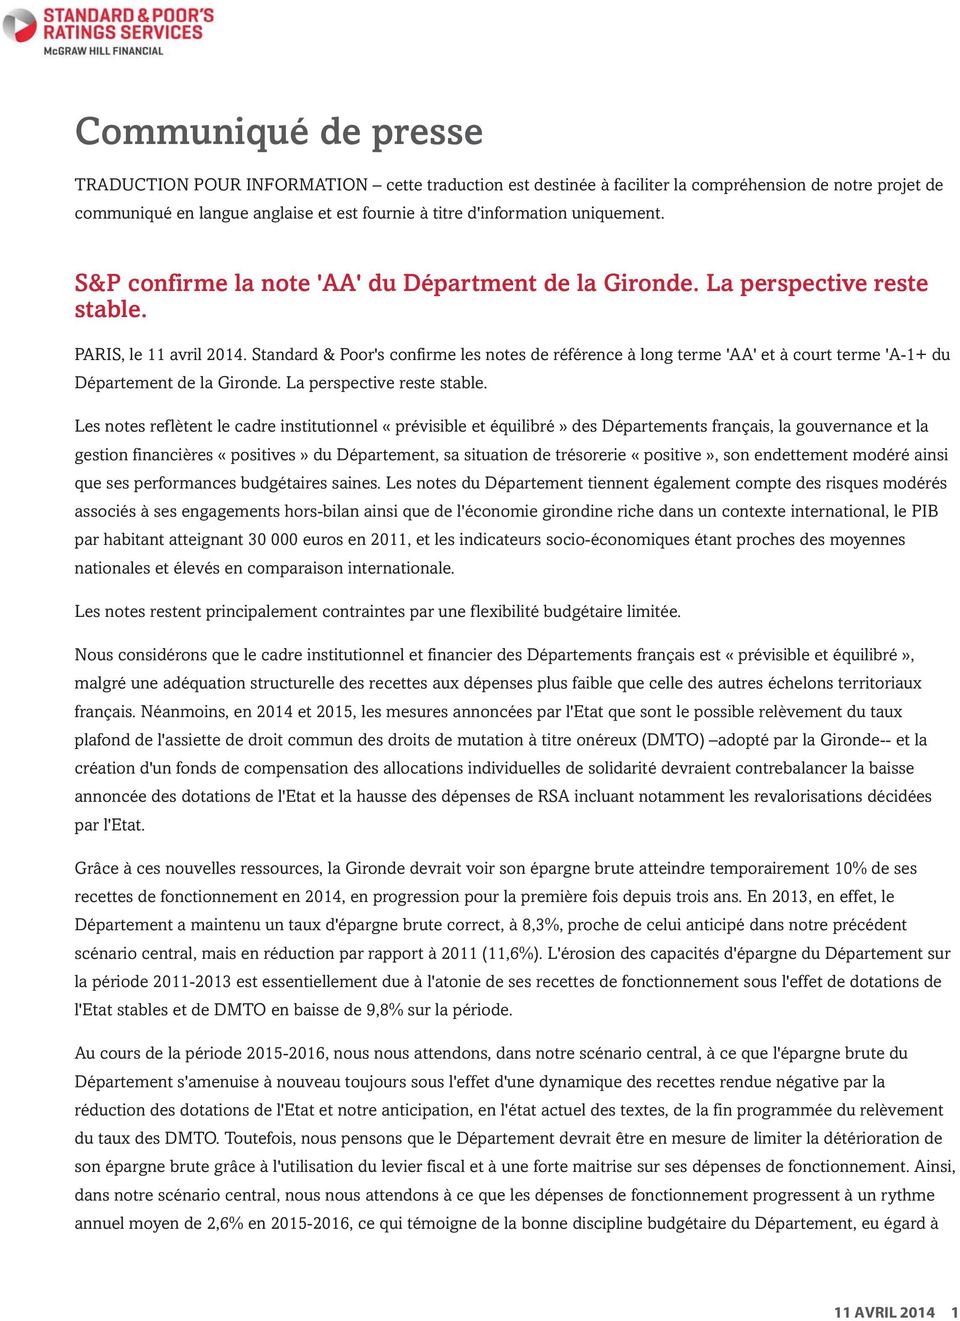 Standard & Poor's confirme les notes référence à long terme 'AA' et à court terme 'A-1+ du Département la Giron. La perspective reste stable.